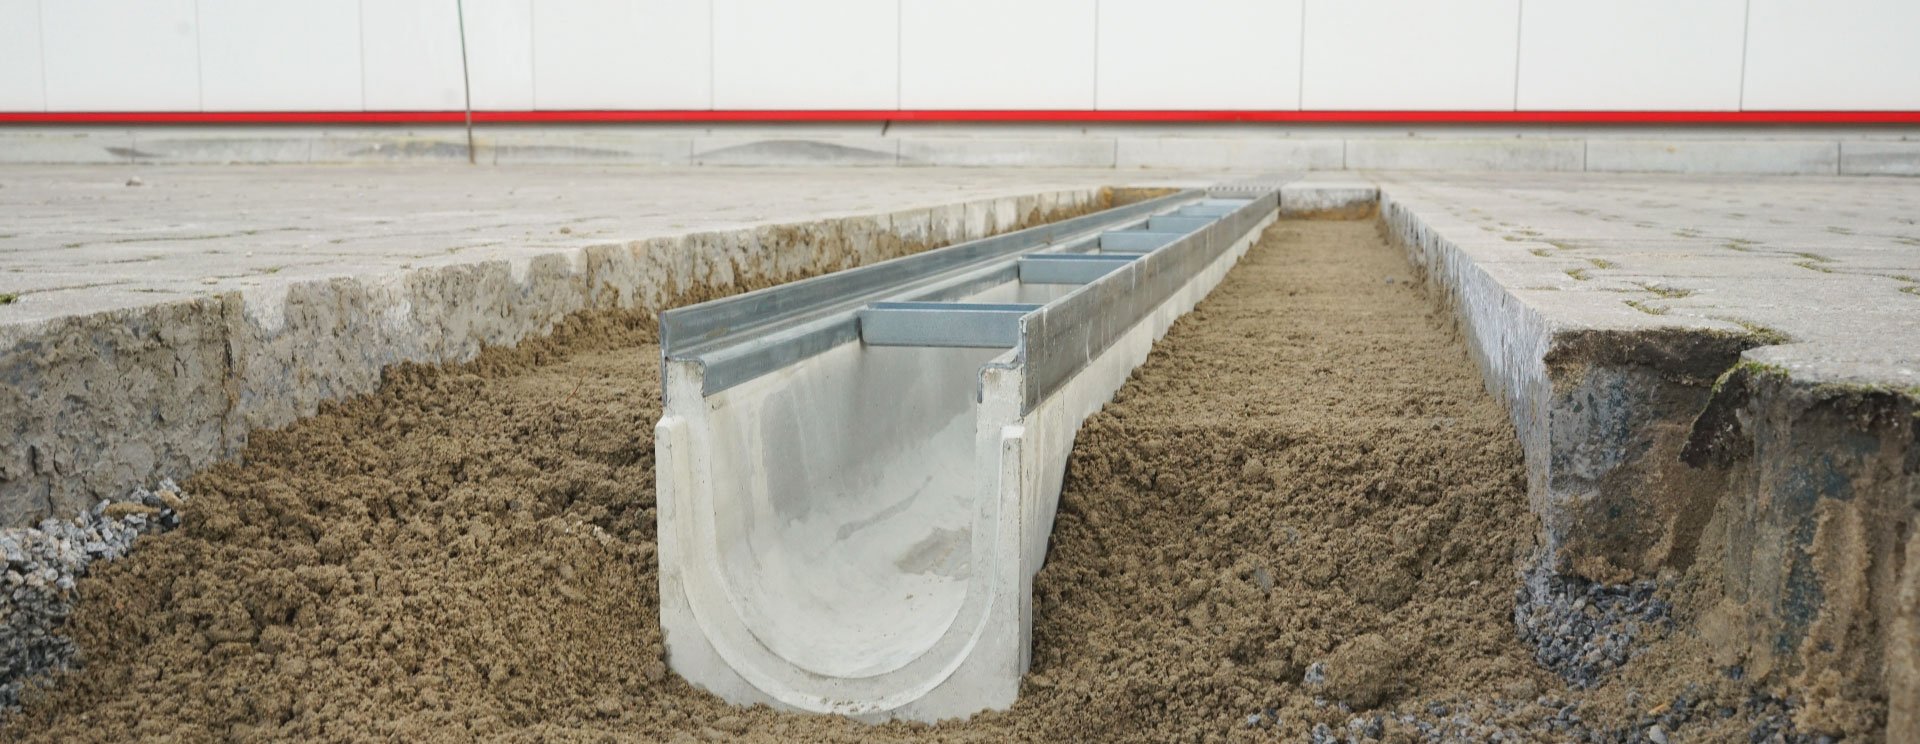 Betonrinne Fortis D400 im Einbau auf dem Hof für Industrie & Werks Gelände für Schwerlast mit LKW befahrbar